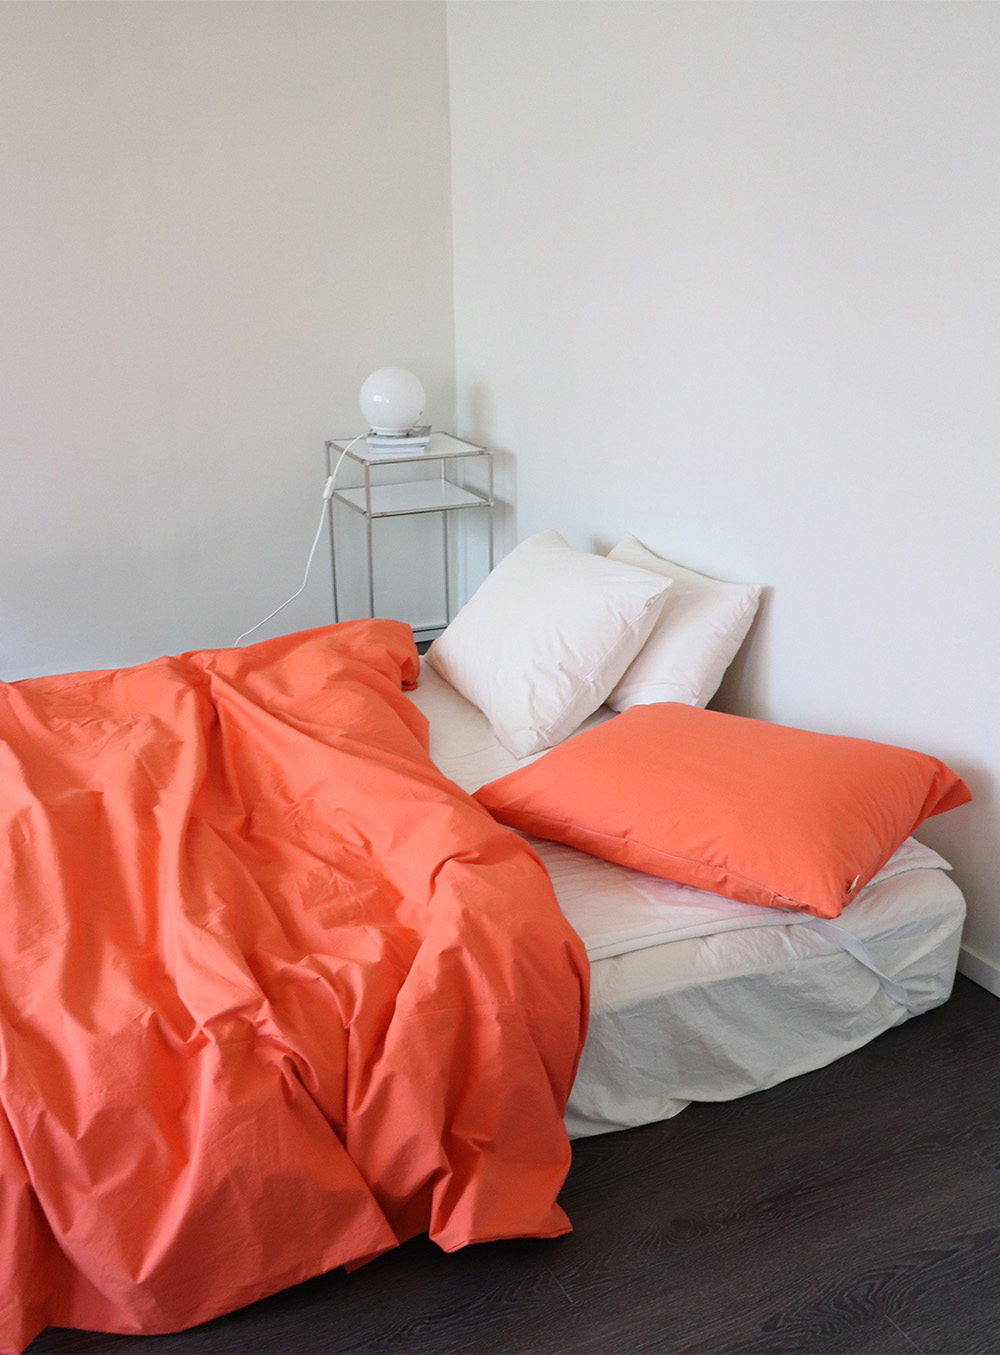 에이지트 (agt) - Orange cotton bedding